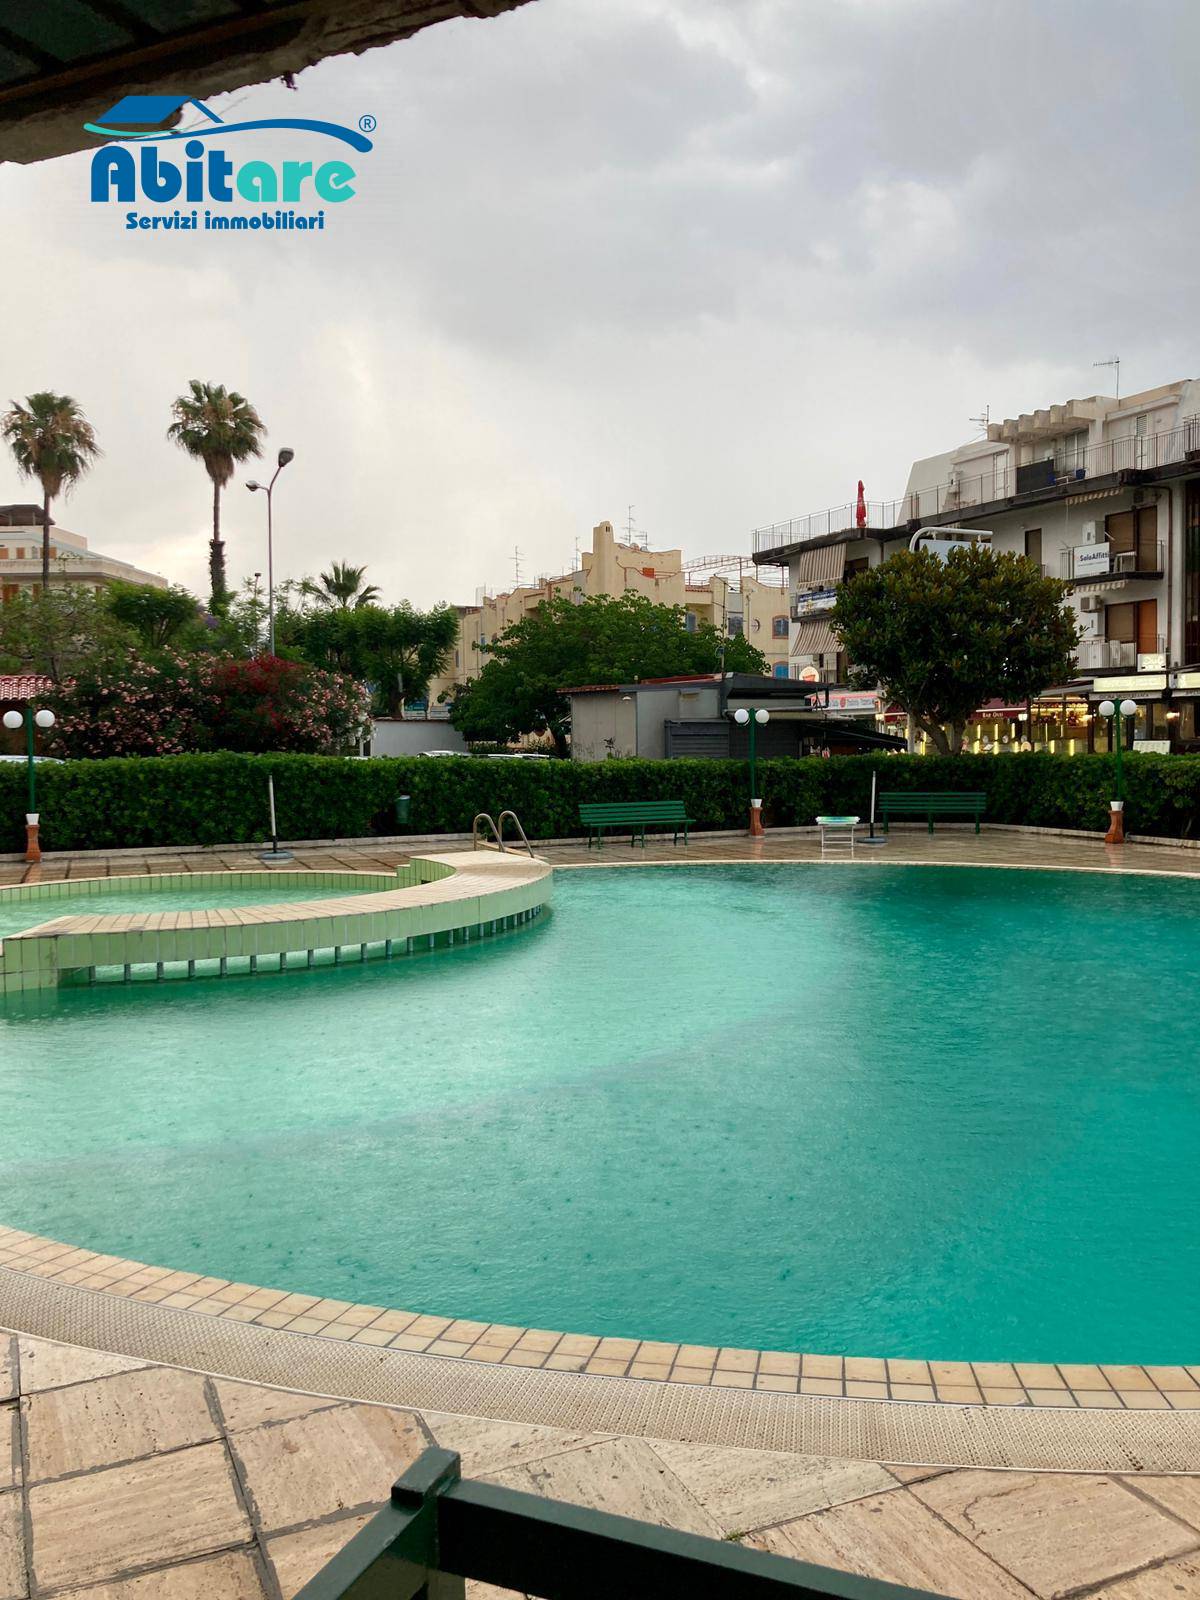 Appartamento in vendita a Giardini-Naxos, 2 locali, zona Zona: Giardini, prezzo € 180.000 | CambioCasa.it